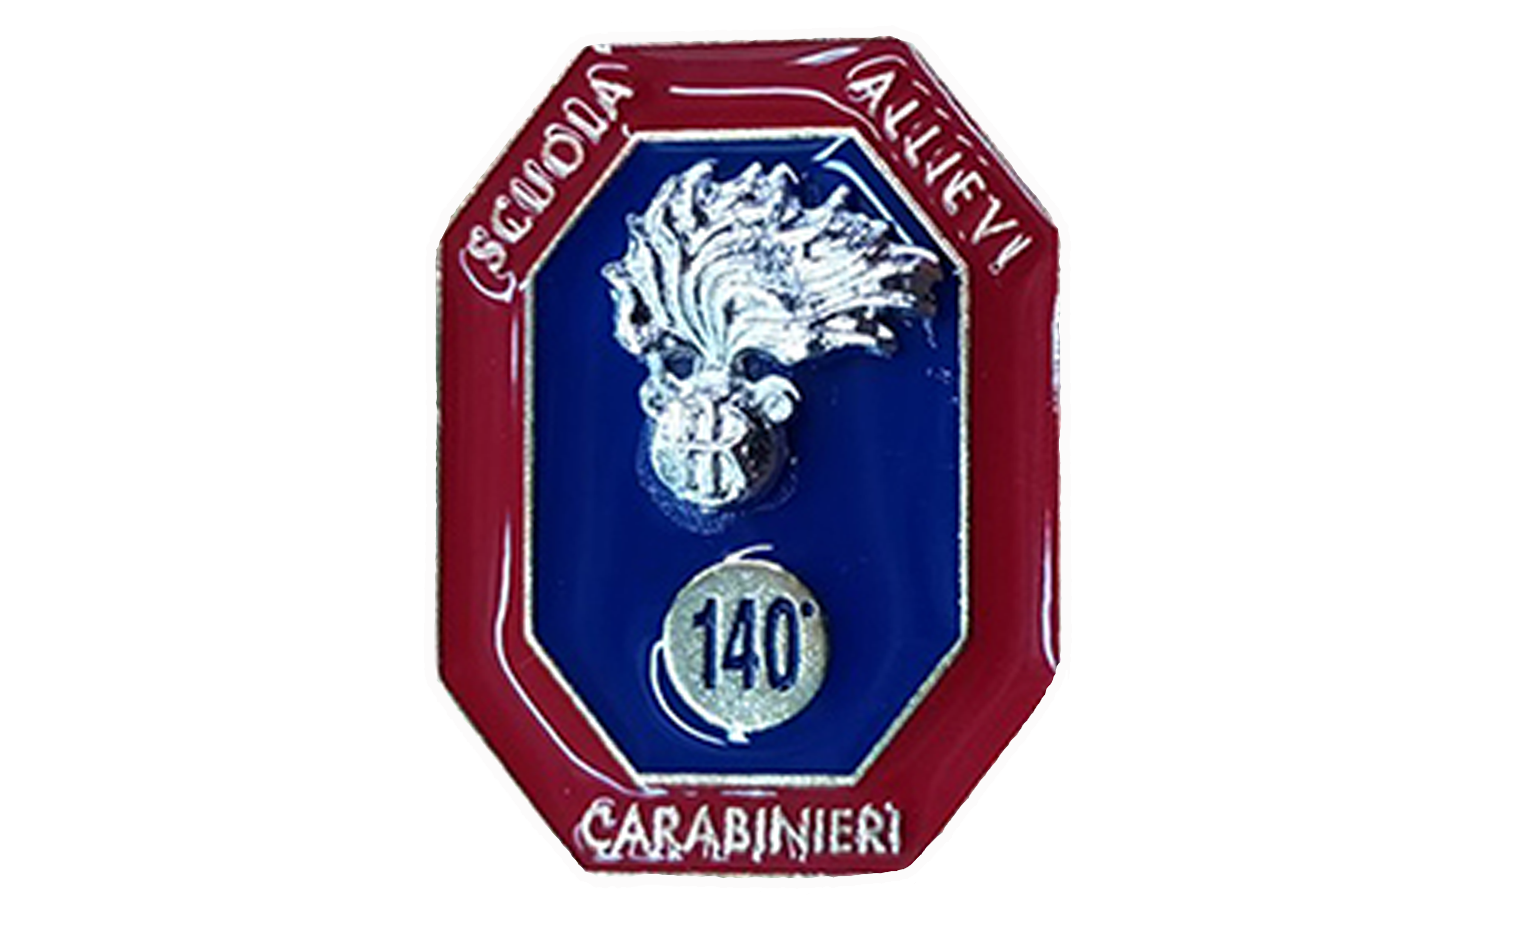 spilla-allievi-carabinieri-140-corso